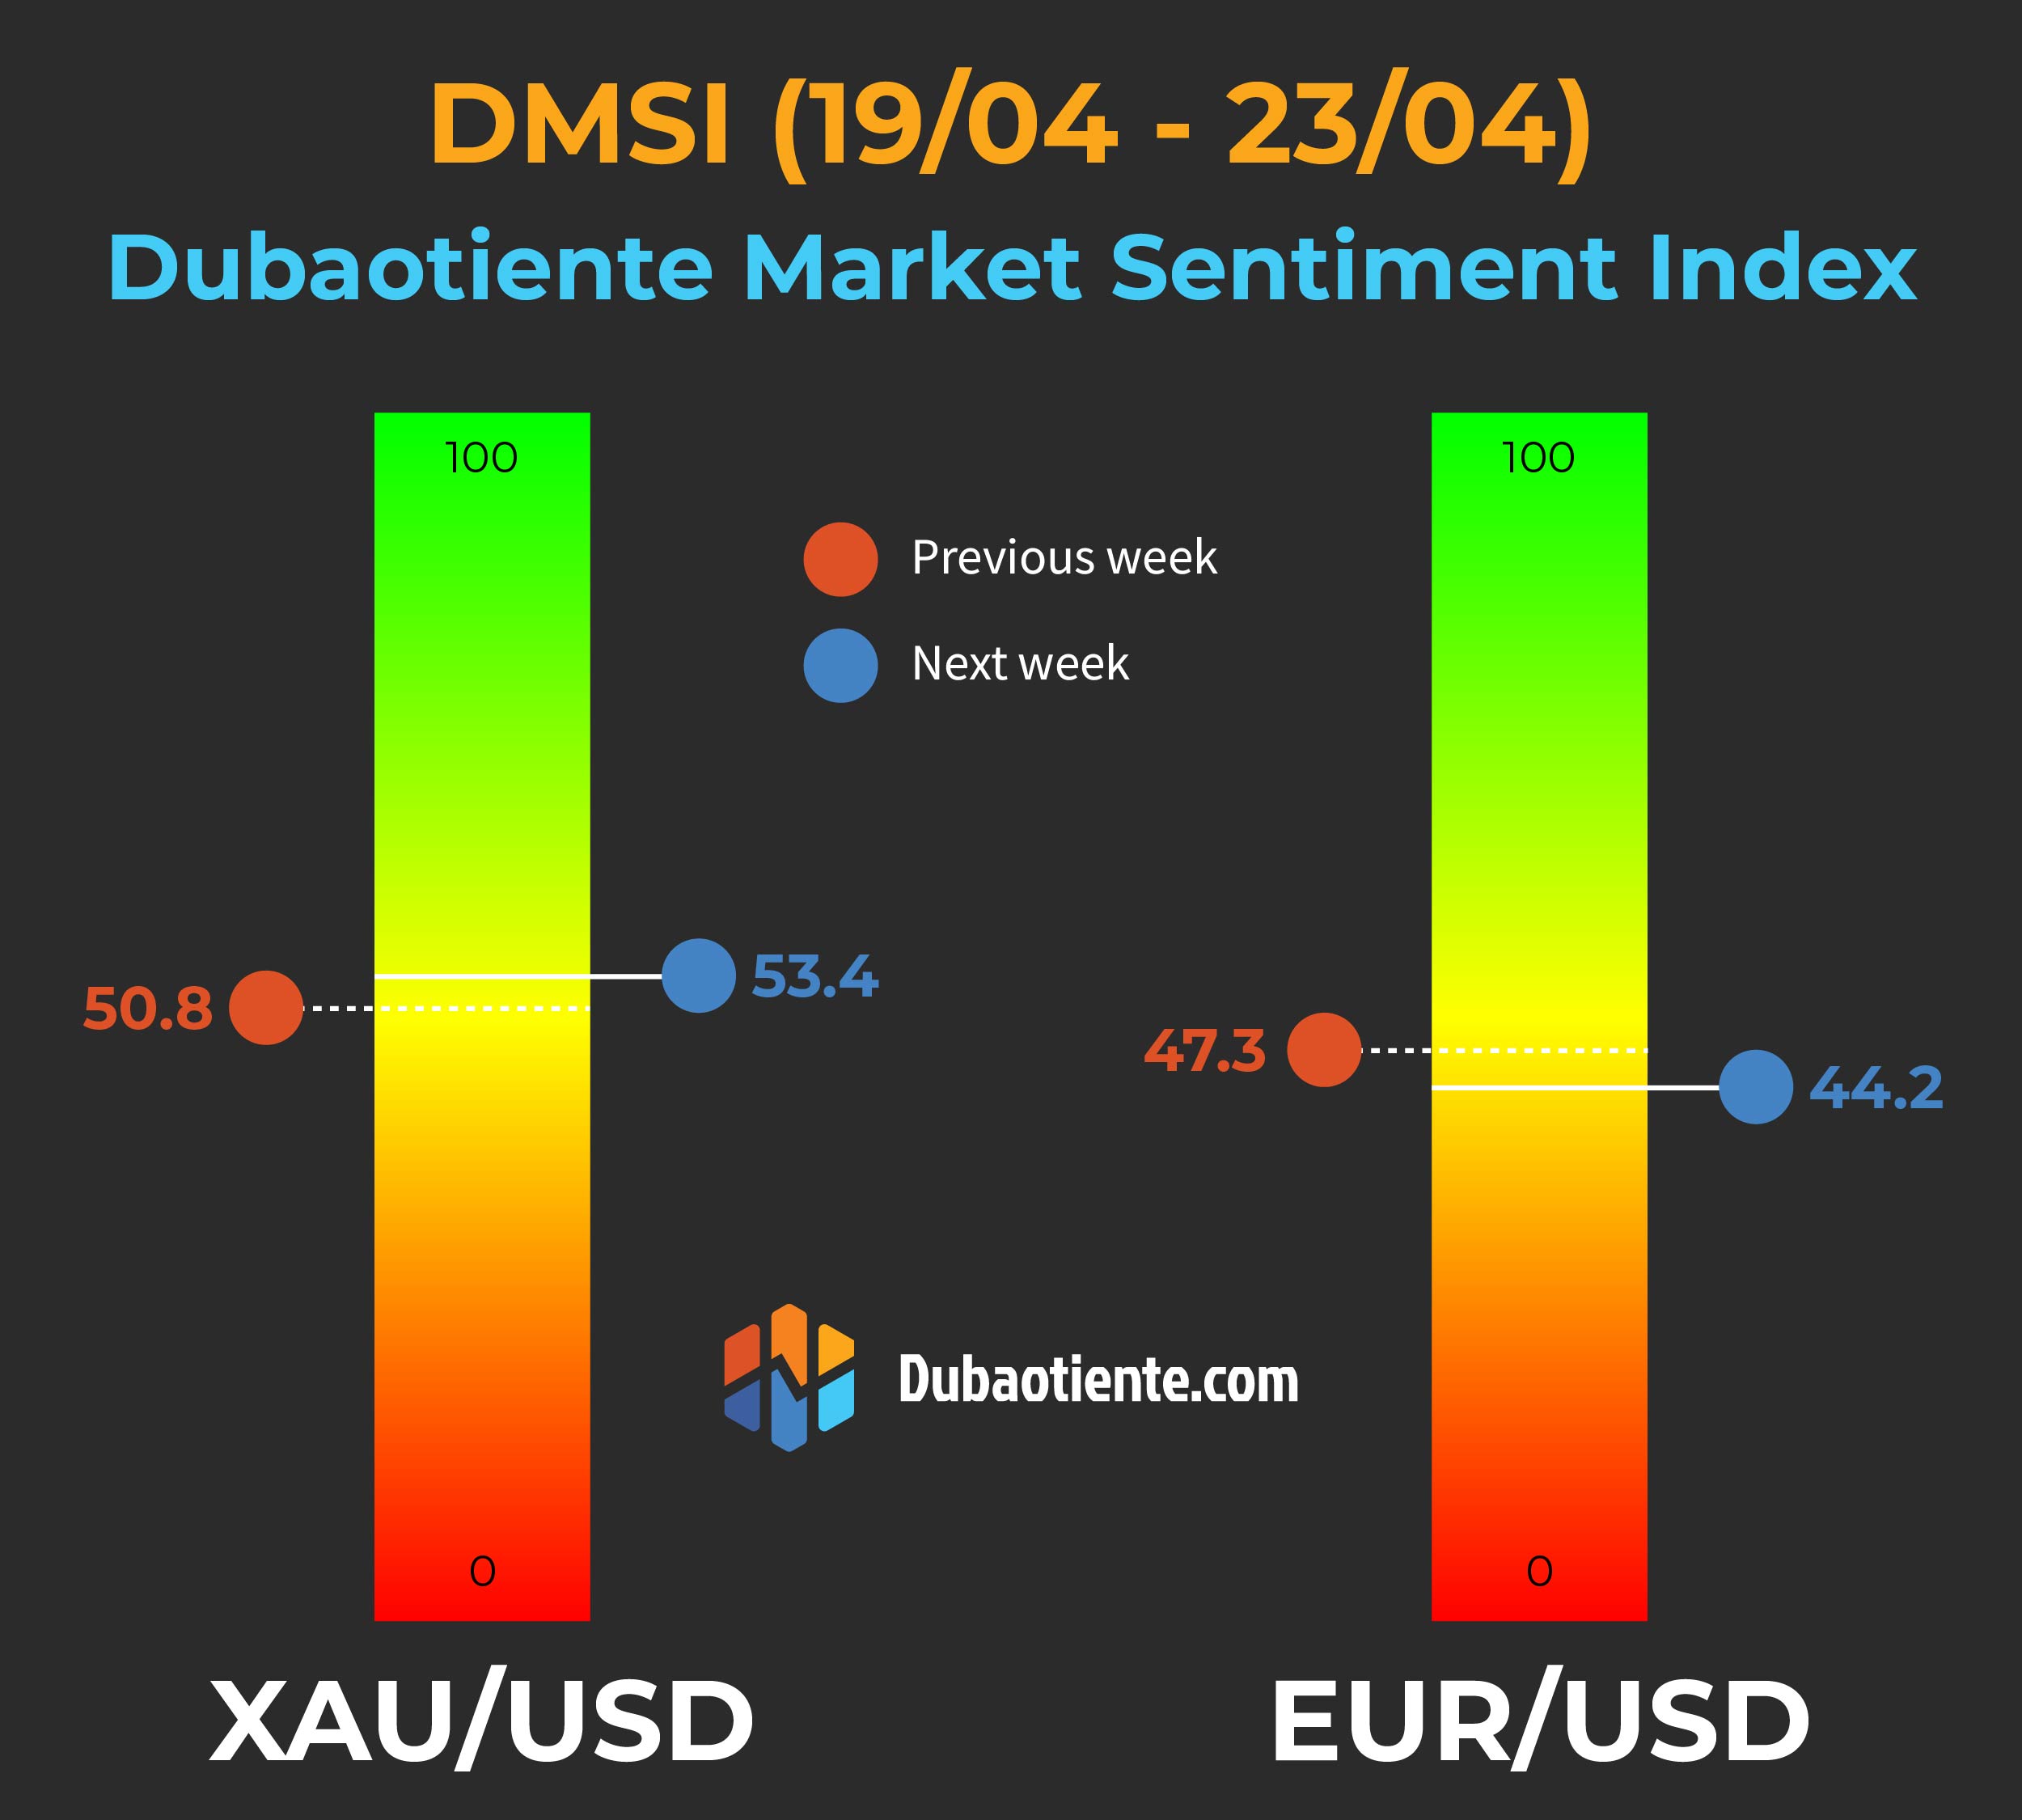 Chỉ số DMSI tuần 19/04 - 23/04: USD suy yếu thể hiện qua giá vàng, thay vì tỷ giá EUR/USD.